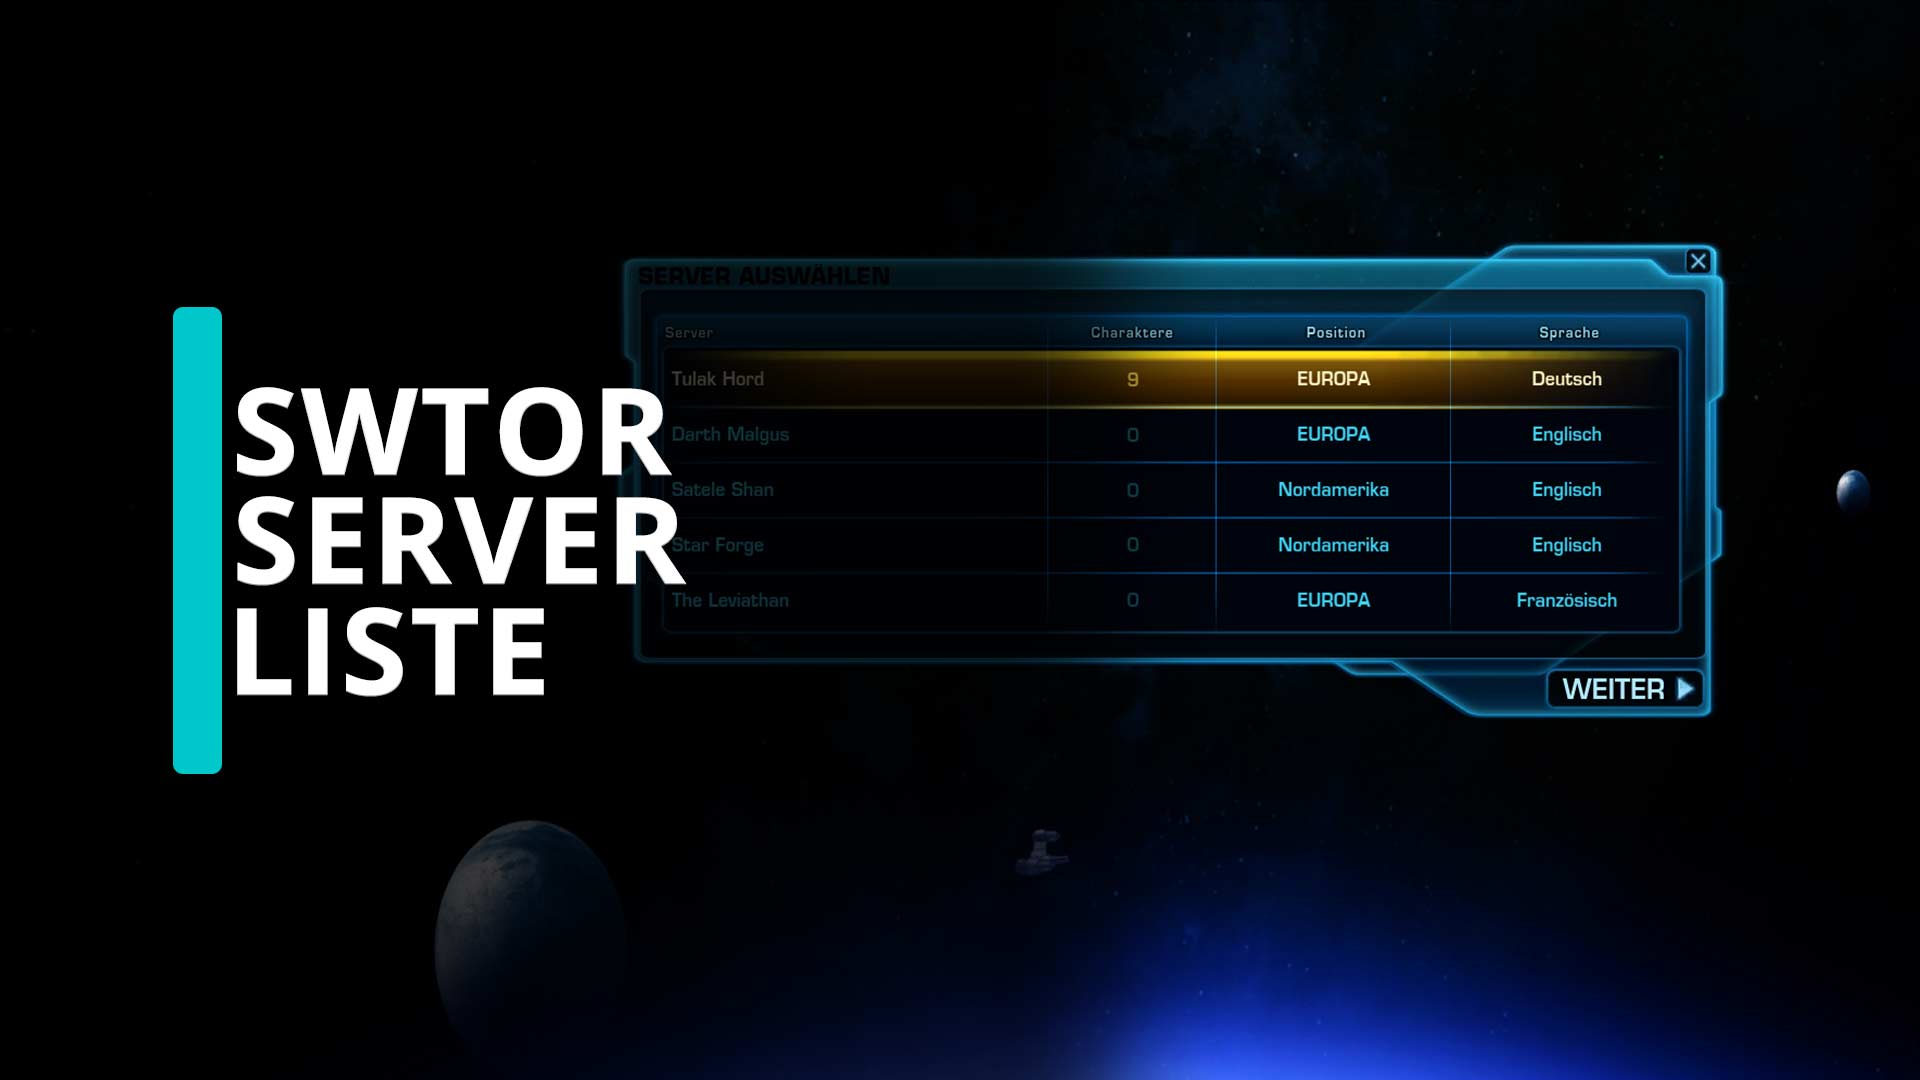 SWTOR Server Liste